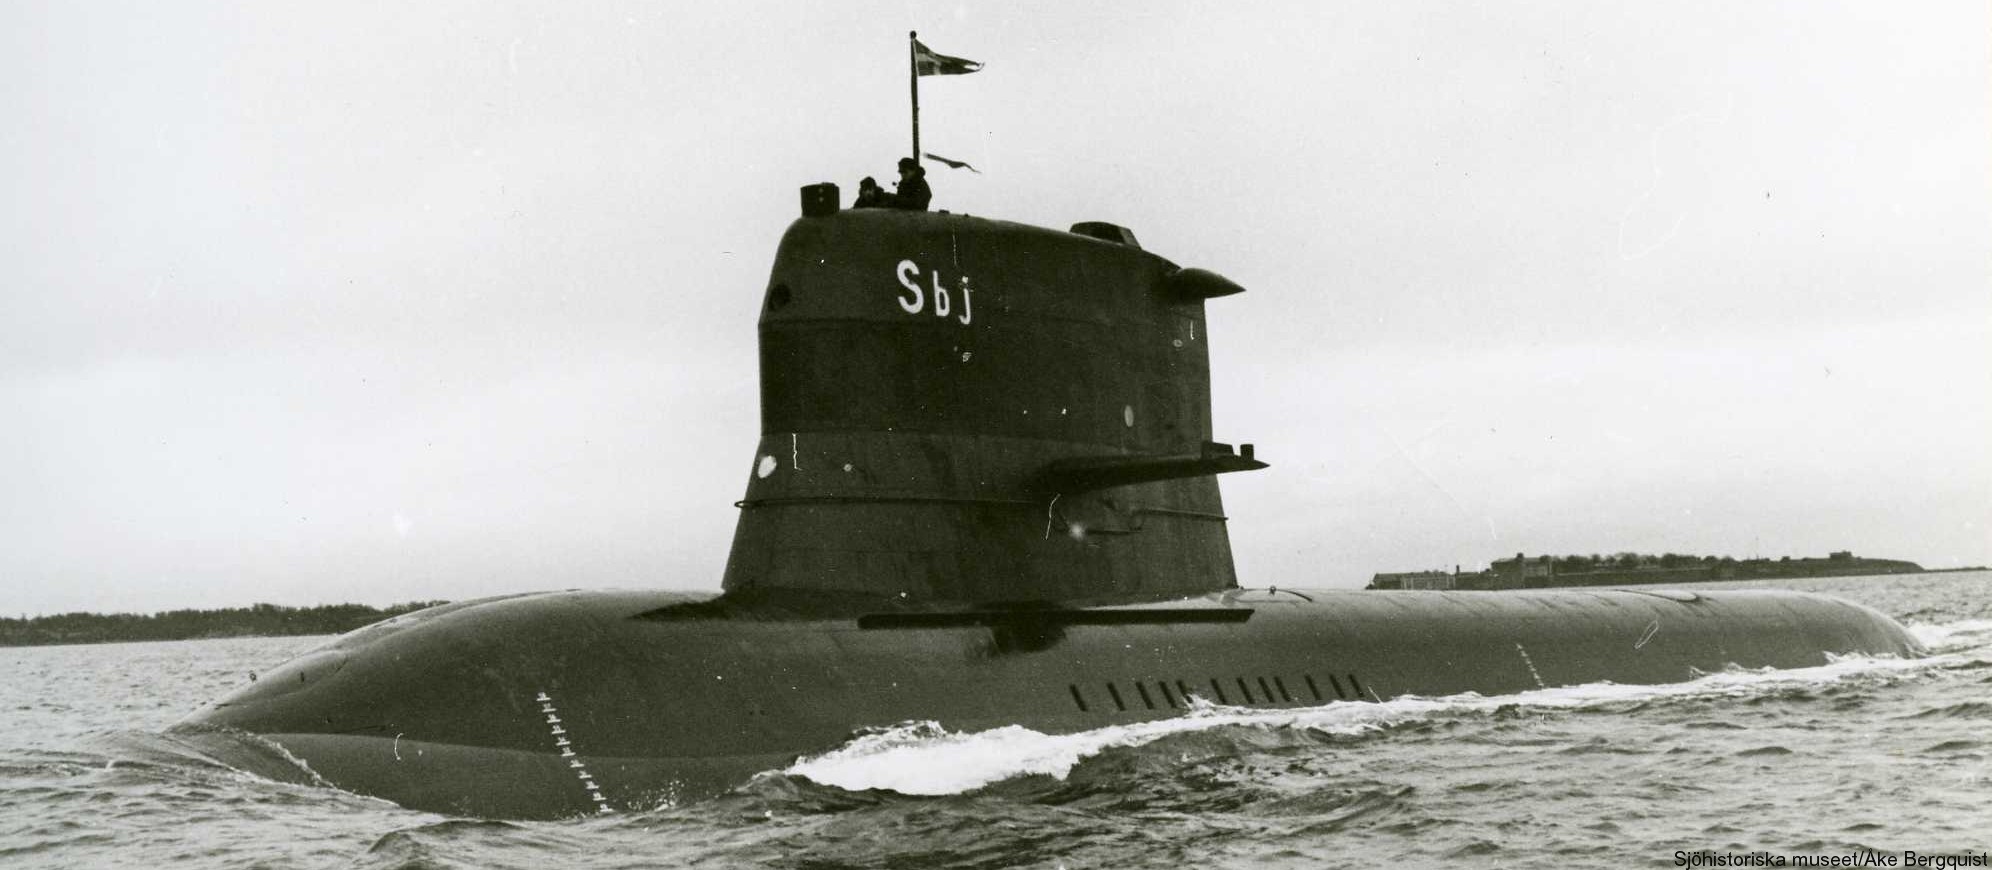 hswms hms sjöbjörnen sbj sjöormen a11 class submarine ssk swedish navy svenska marinen försvarsmakten 03